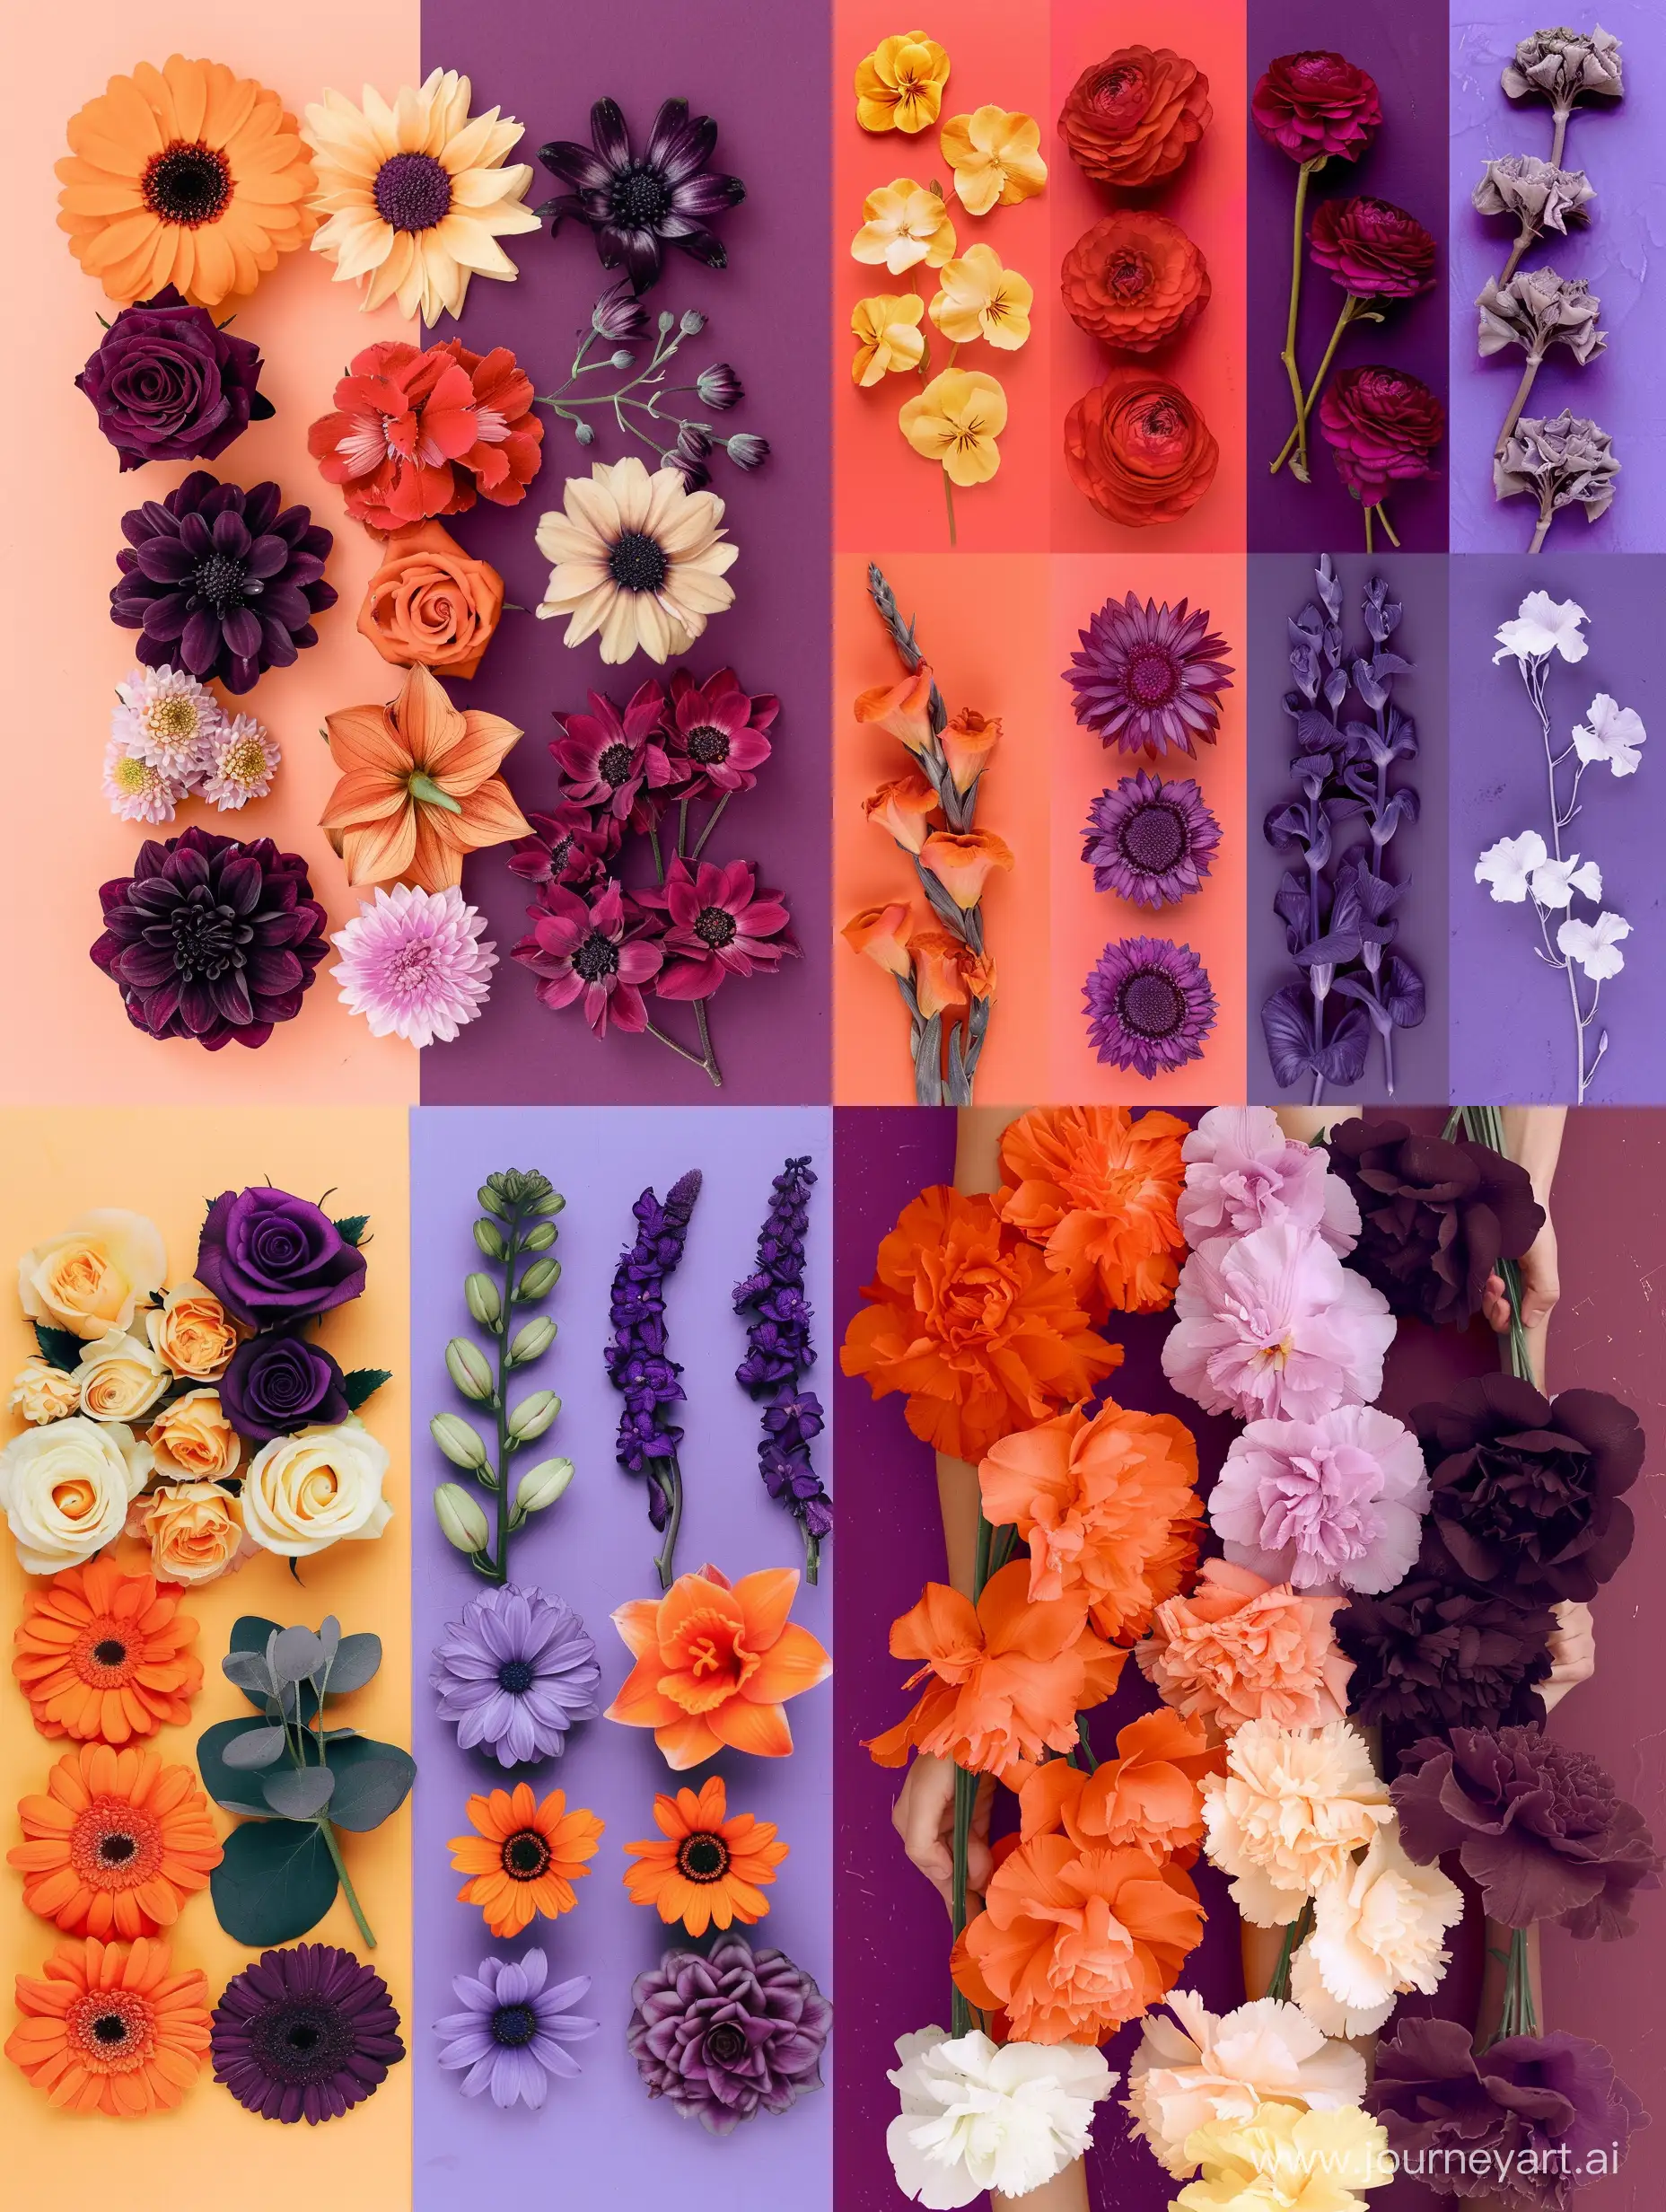 Vibrant-Orange-Flower-Arrangement-Stunning-Floral-Composition-in-Captivating-Shades